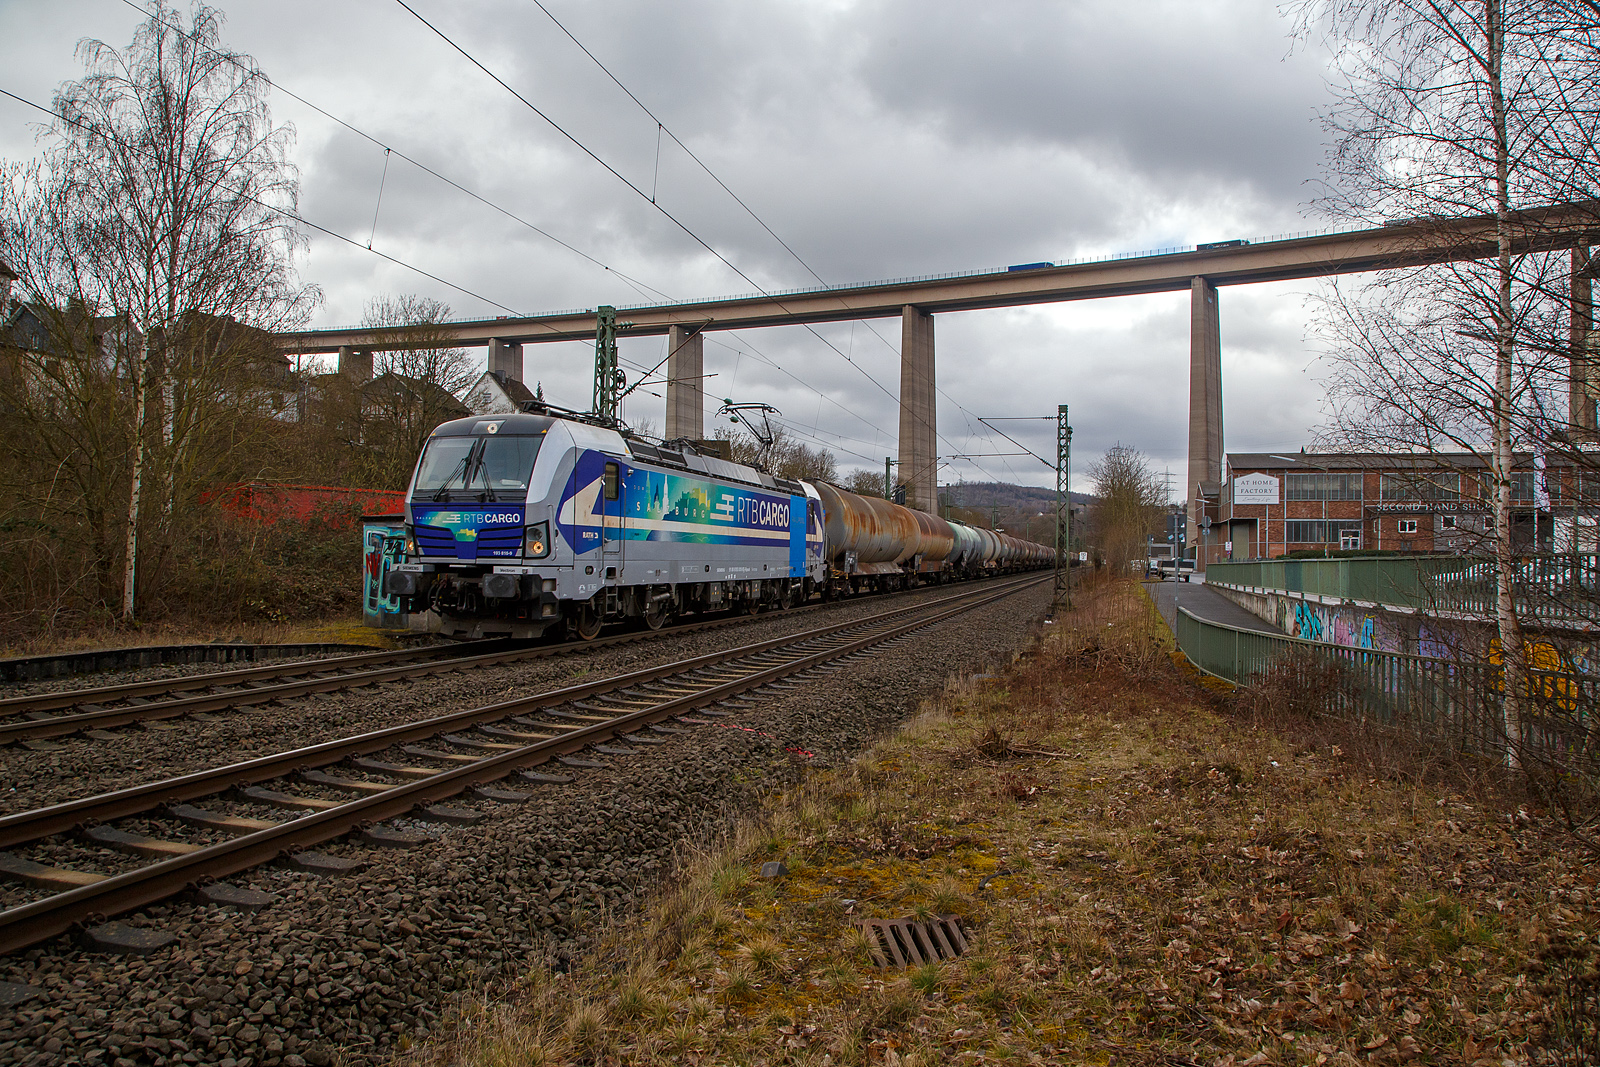 Die an die RTB Cargo GmbH vermietete SIEMENS Vectron AC – 193 810-9 „Salzburg“ (91 80 6193 810-9 D-Rpool) der Railpool GmbH (München), fährt am 22.03.2021 mit einem Kesselwagenzug durch Siegen-Eiserfeld in Richtung Siegen. Im Hintergrund die 105 m hohe Siegtalbrücke der A45 (Sauerlandlinie).

Die Siemens Vectron AC wurde 2014 von Siemens Mobility GmbH in München-Allach unter der Fabriknummer 21898 gebaut und an die Railpool GmbH in München geliefert. Diese Vectron Lokomotive ist als AC – Lokomotive (Wechselstrom-Variante) mit 6.400 kW konzipiert und zugelassen für Deutschland, Österreich, Ungarn und Rumänien, sie hat eine Höchstgeschwindigkeit von 200 km/h.